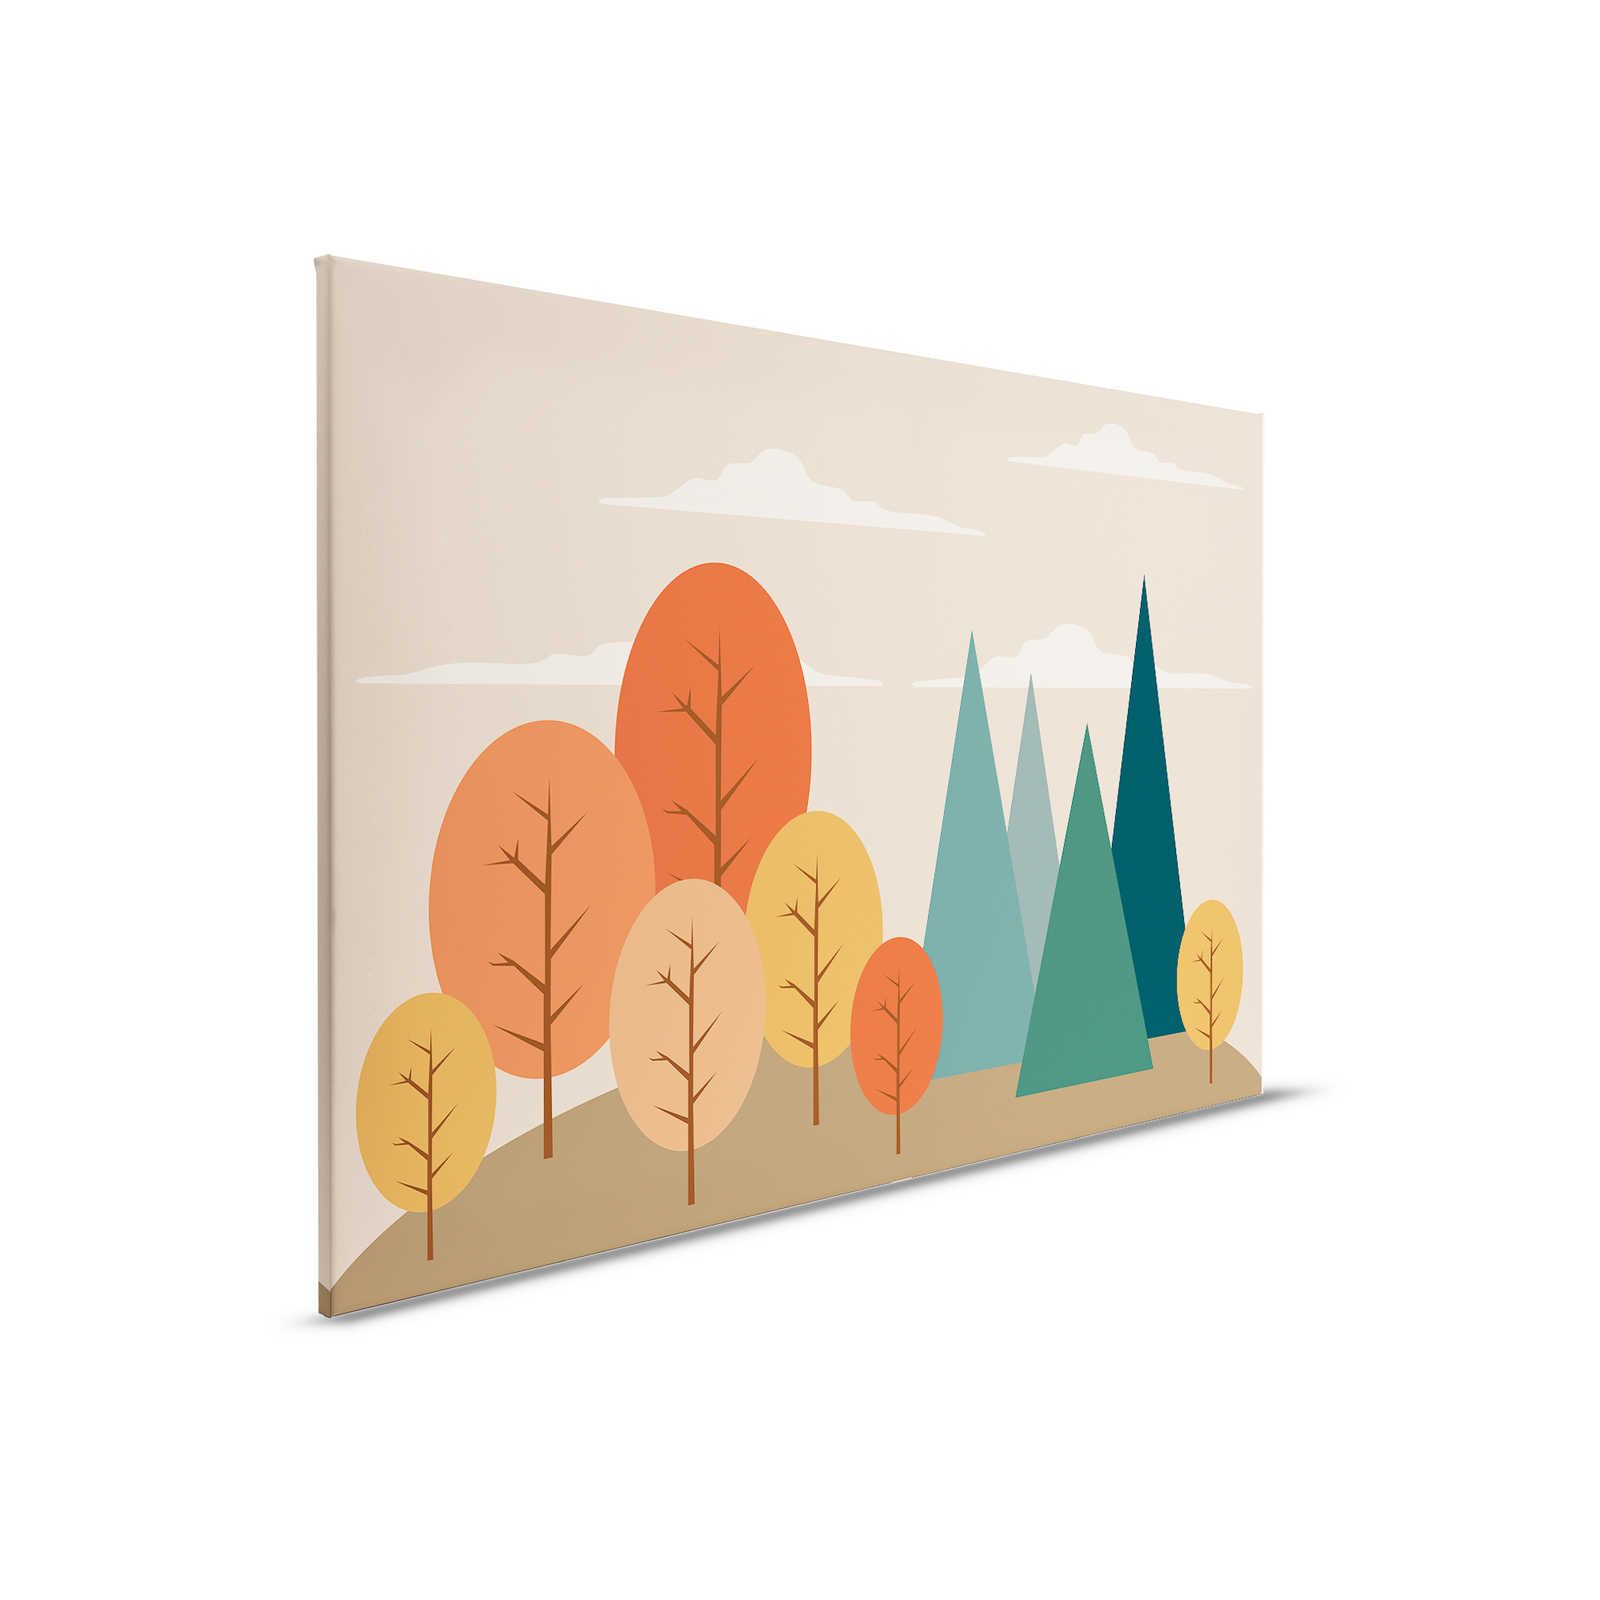         Leinwand Zauberwald mit geometrischen Formen – 90 cm x 60 cm
    